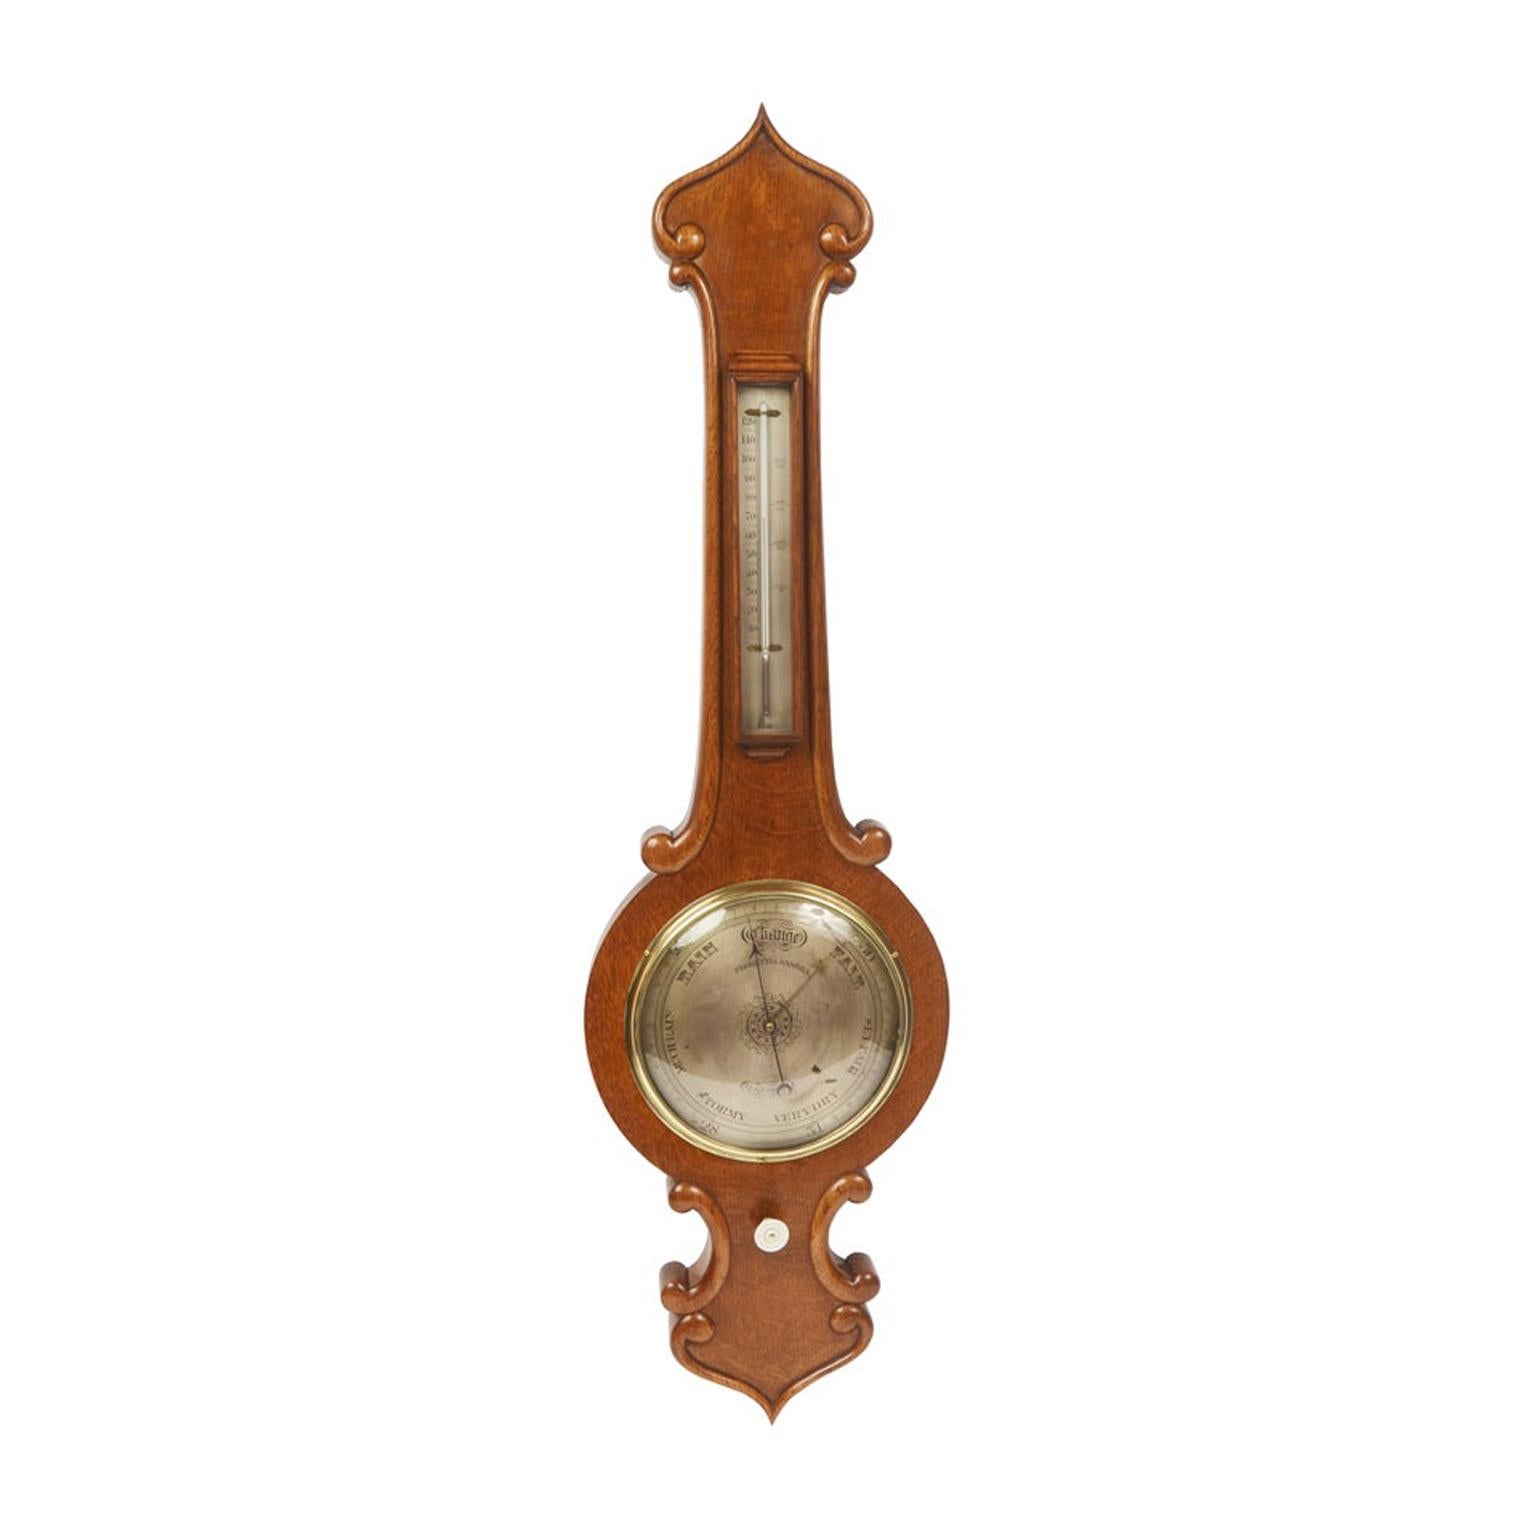 Baromètre torricellien en bois de chêne Negretti & Zambra, ancien instrument d'horlogerie des années 1860